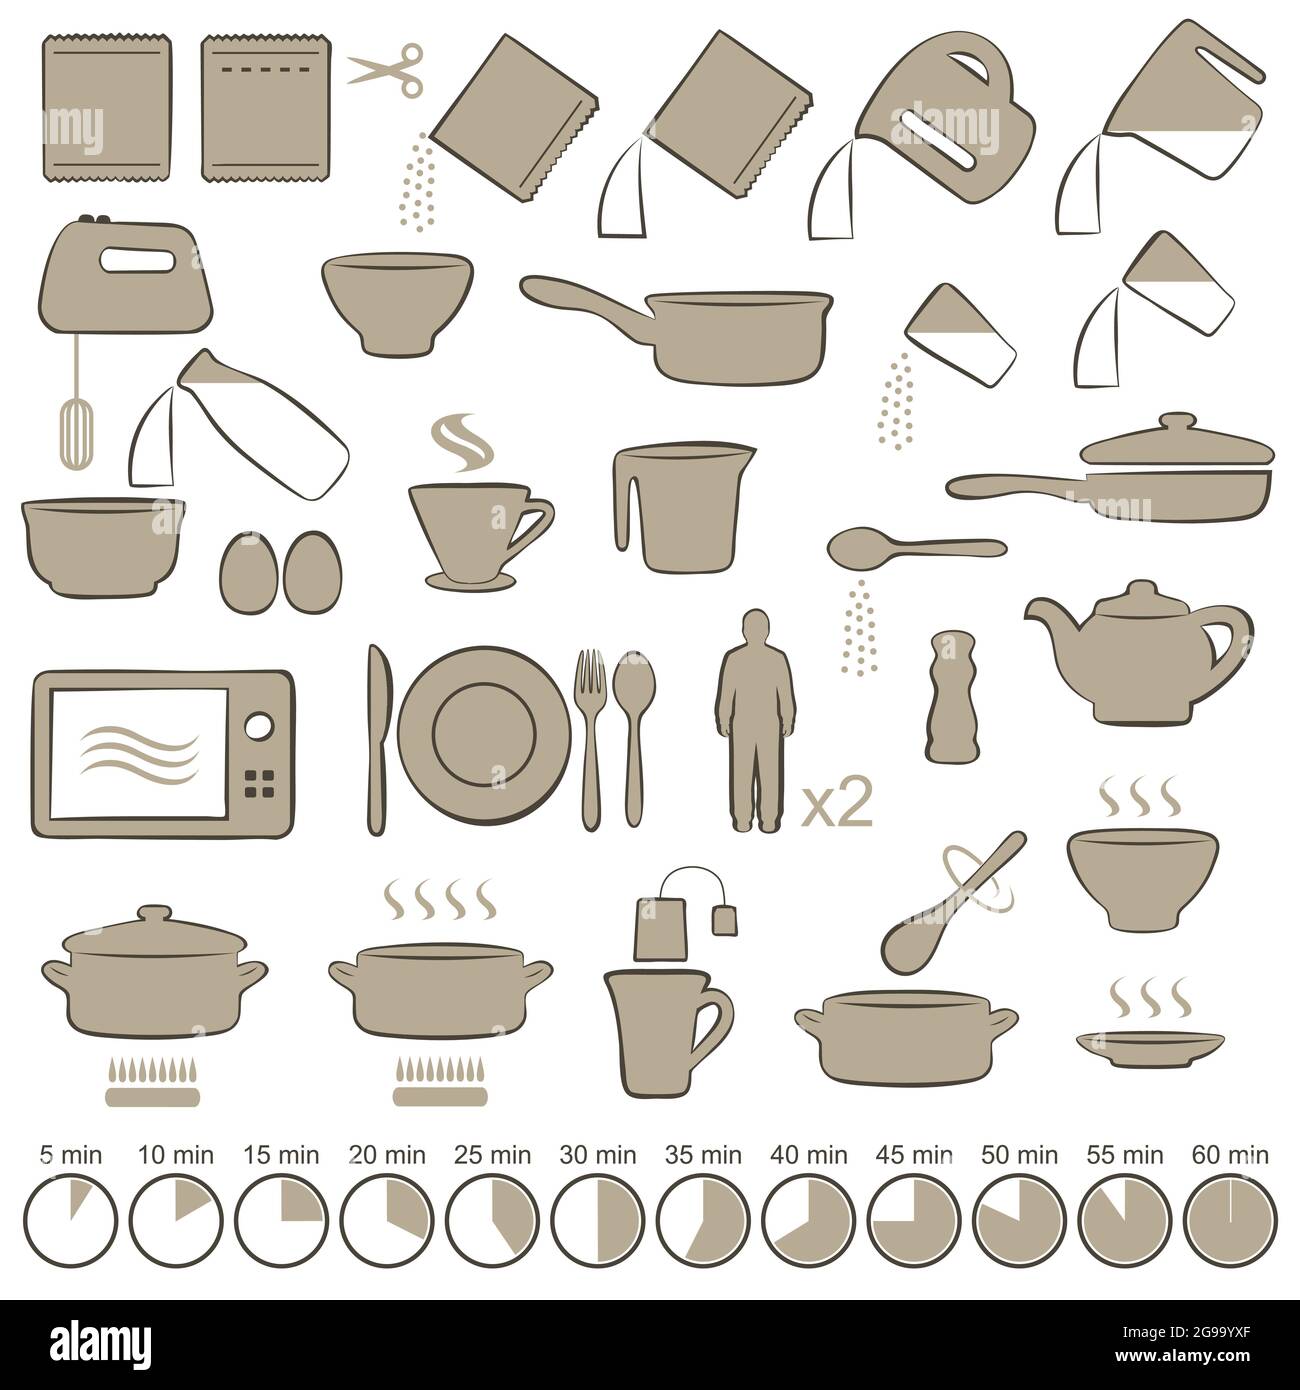 Ingredientes De Cocción E Iconos De Los Utensilios De Cocina